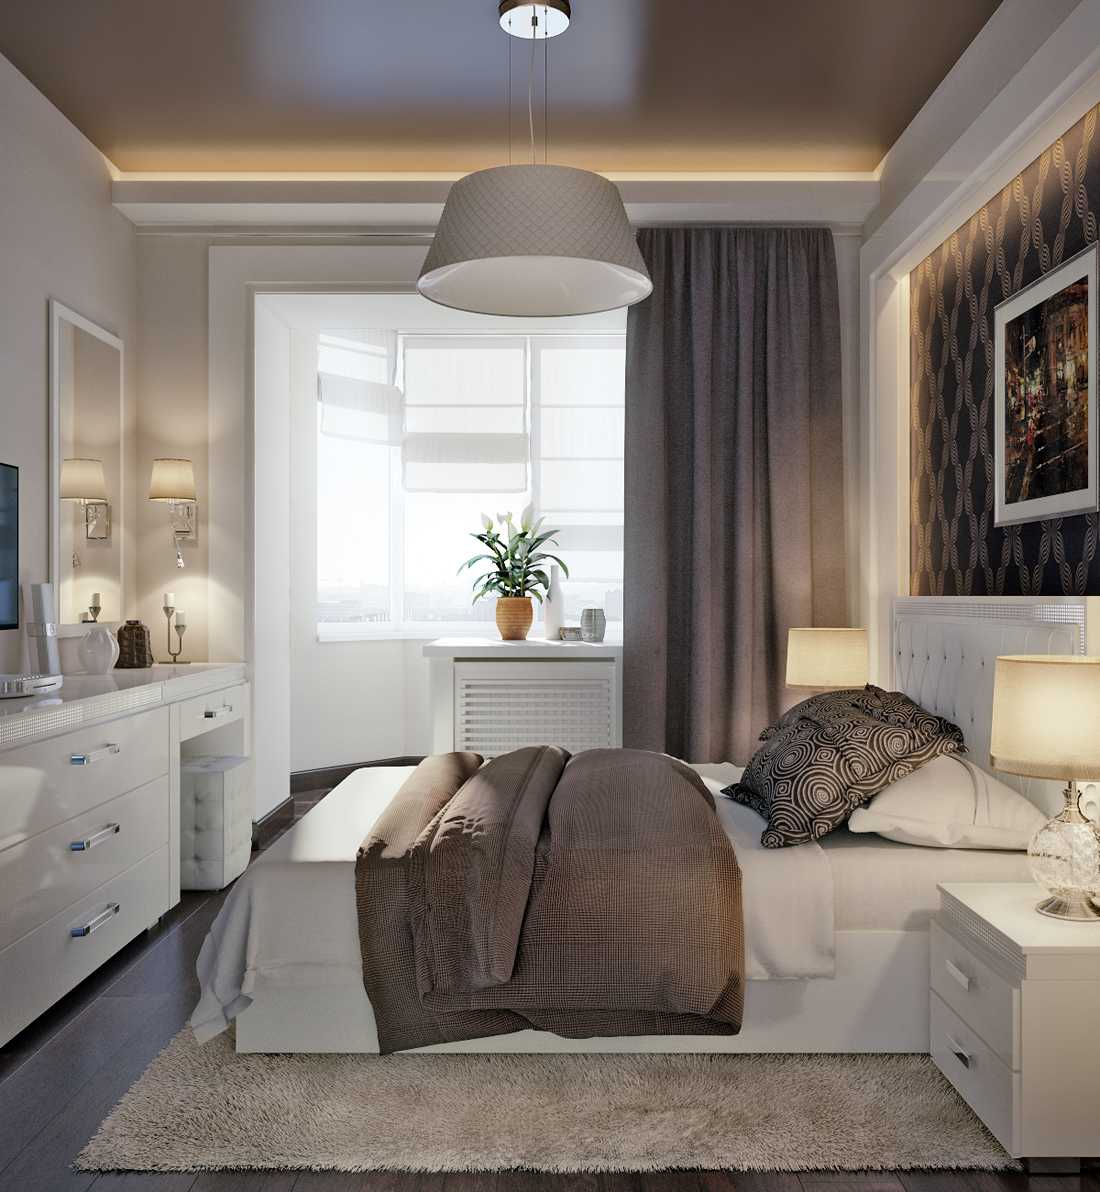 Спальня во французском стиле: 89 фото с вариантами дизайна